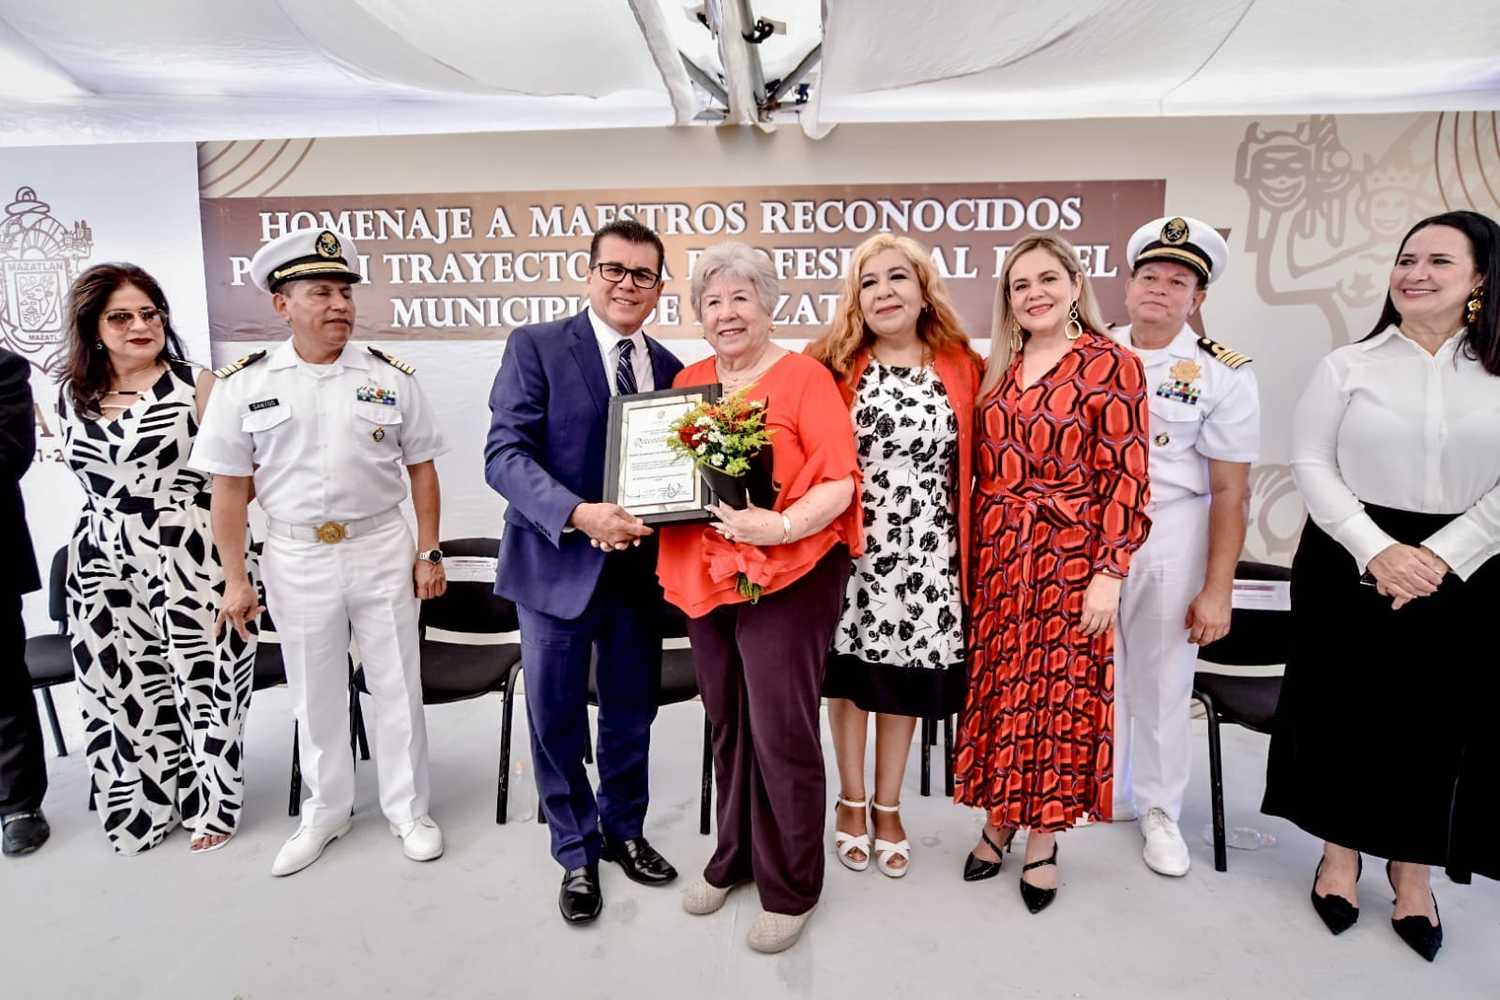   Rinden homenaje a maestros reconocidos por su trayectoria profesional en el municipio de Mazatlán.   